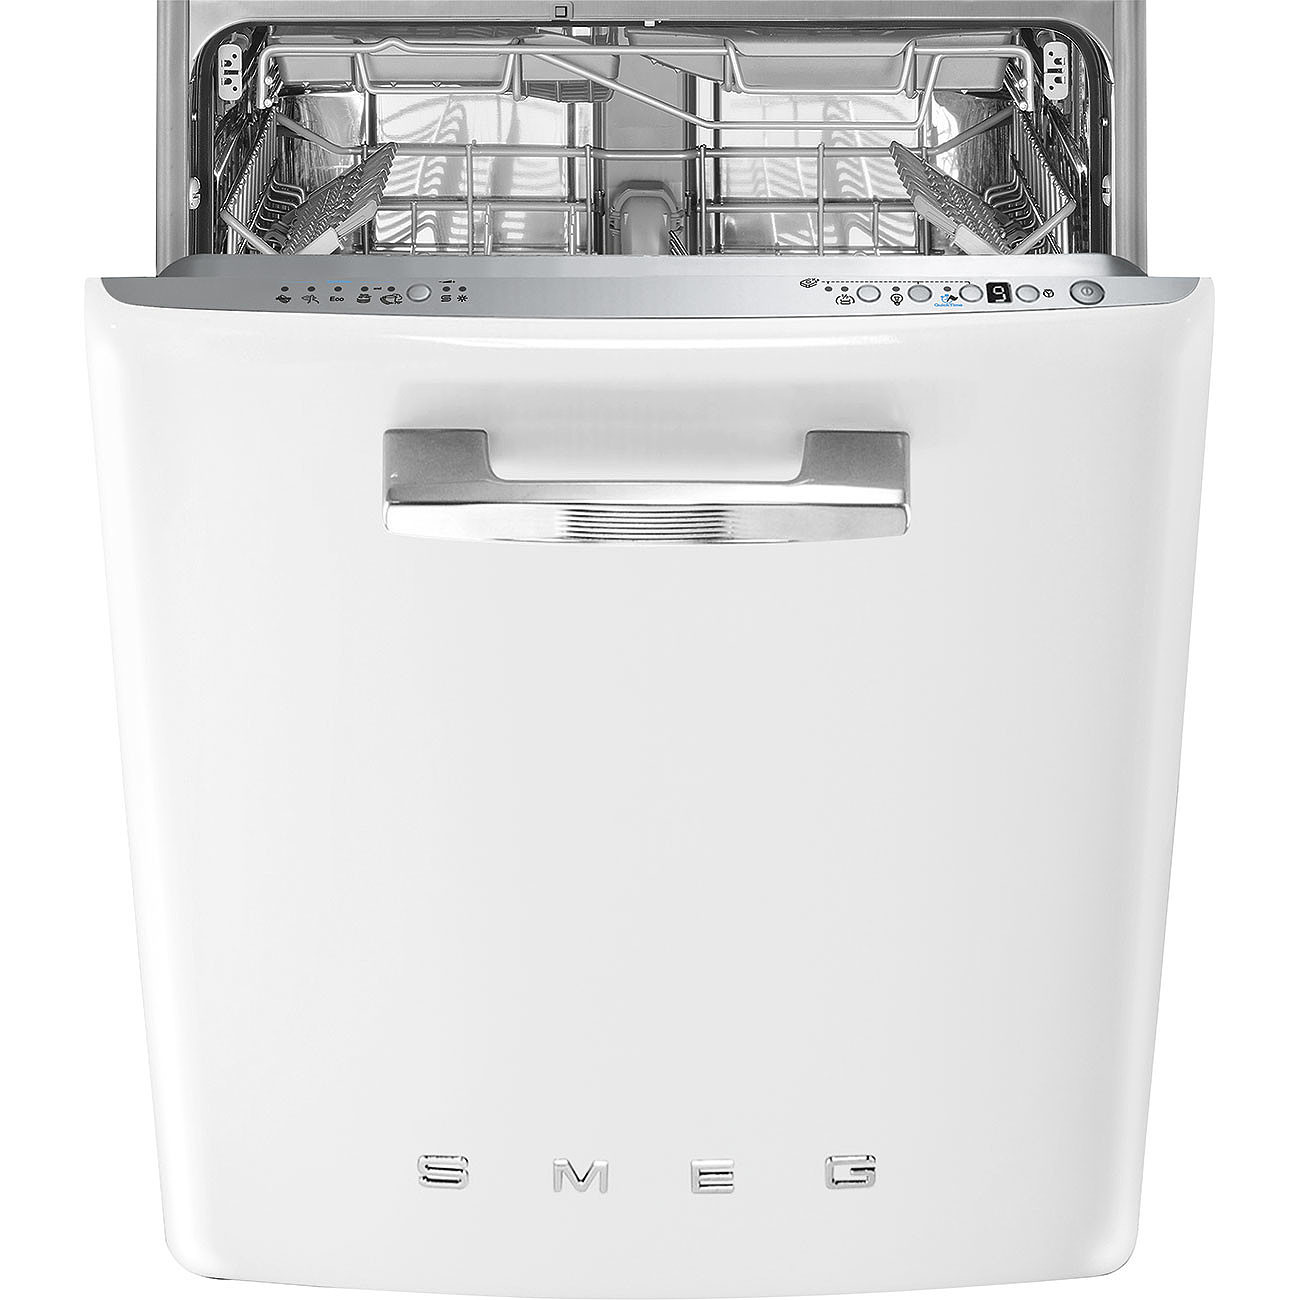 Посудомоечная машина электронная. Посудомоечная машина Smeg st2fabwh. Посудомоечная машина Smeg stfabcr3. Посудомоечная машина Смег 60 см встраиваемая. Посудомоечная машина Smeg st331l.